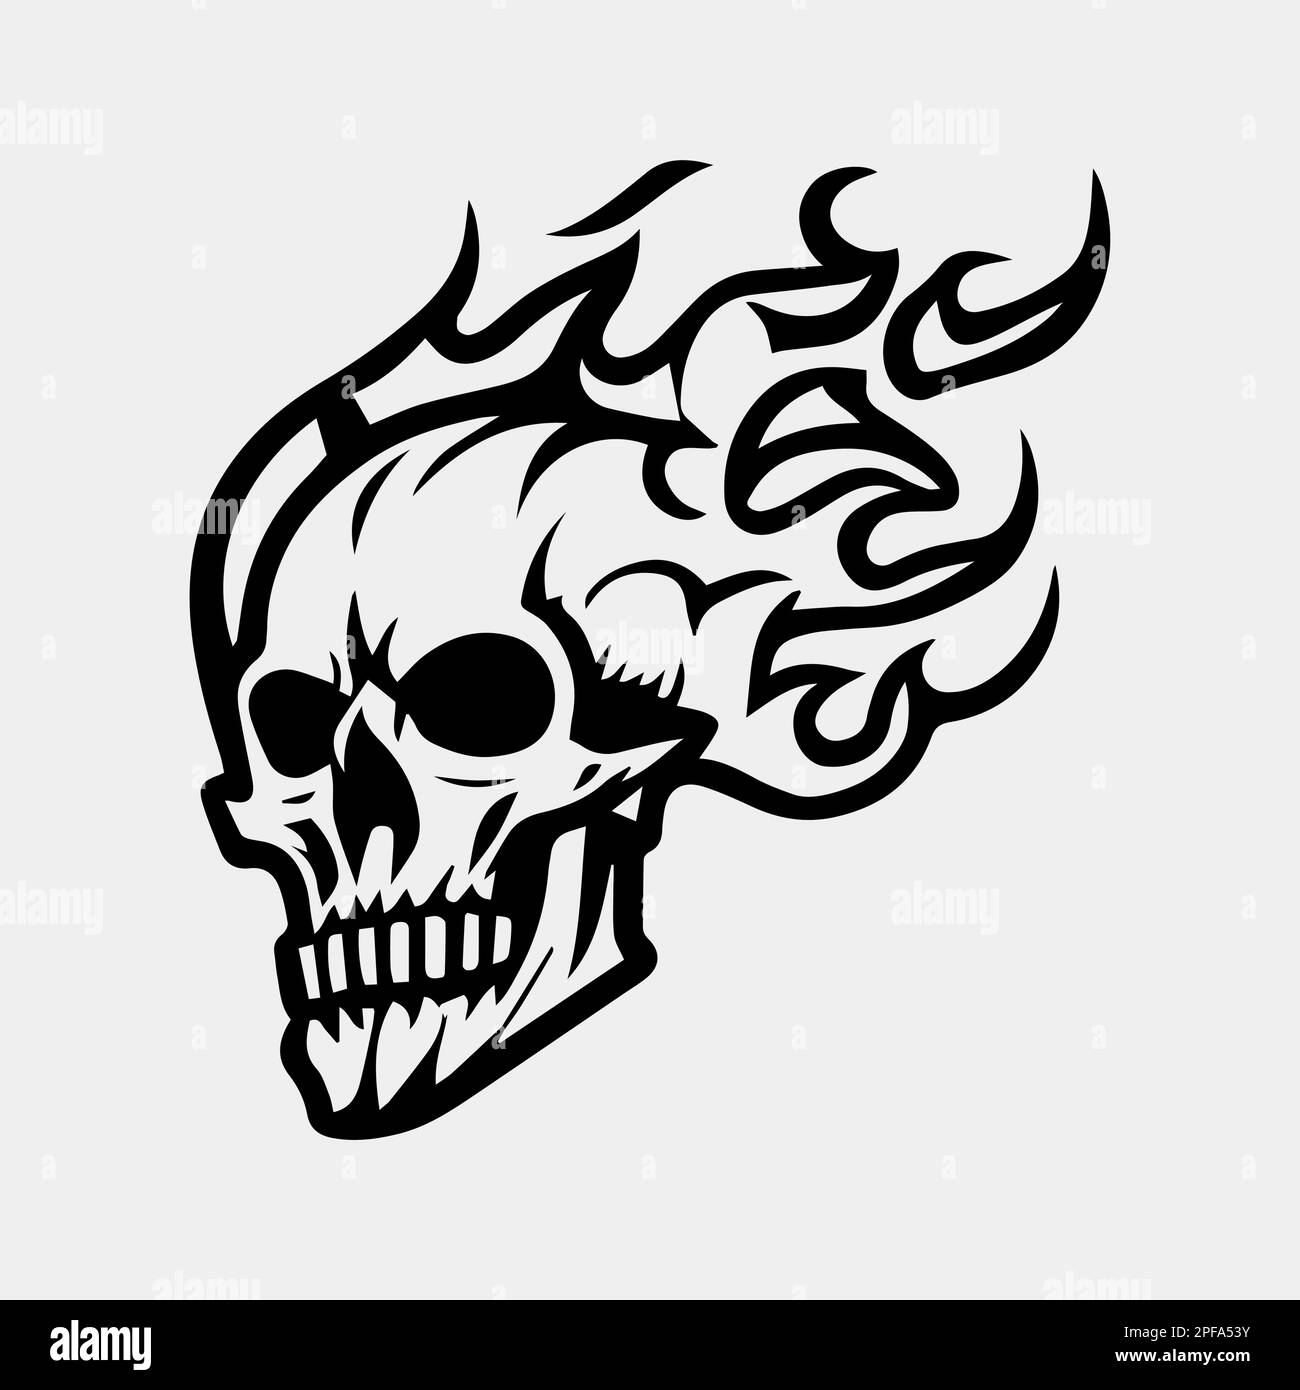 Skull, Flames & Roses Tattoo | Skull tattoo design, Fire tattoo, Skull  tattoo